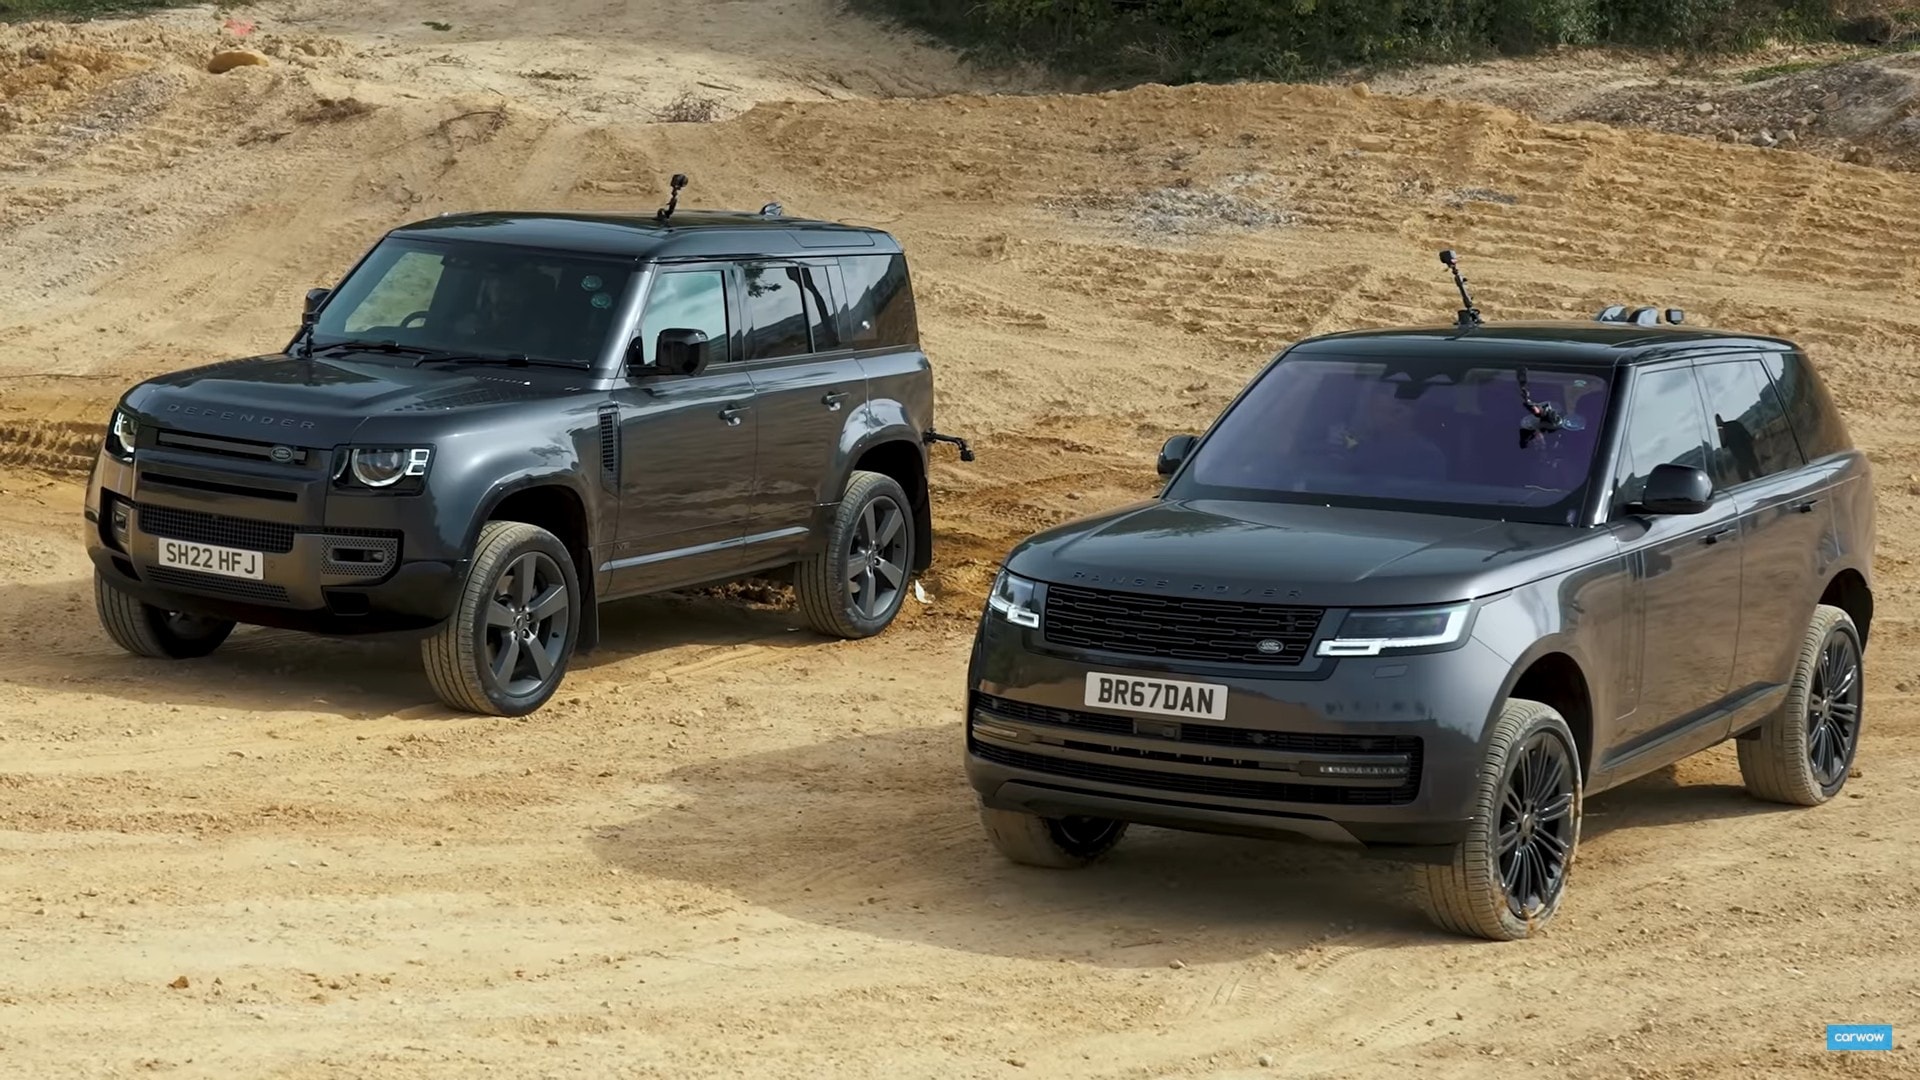 Range Rover vs Range Rover Sport